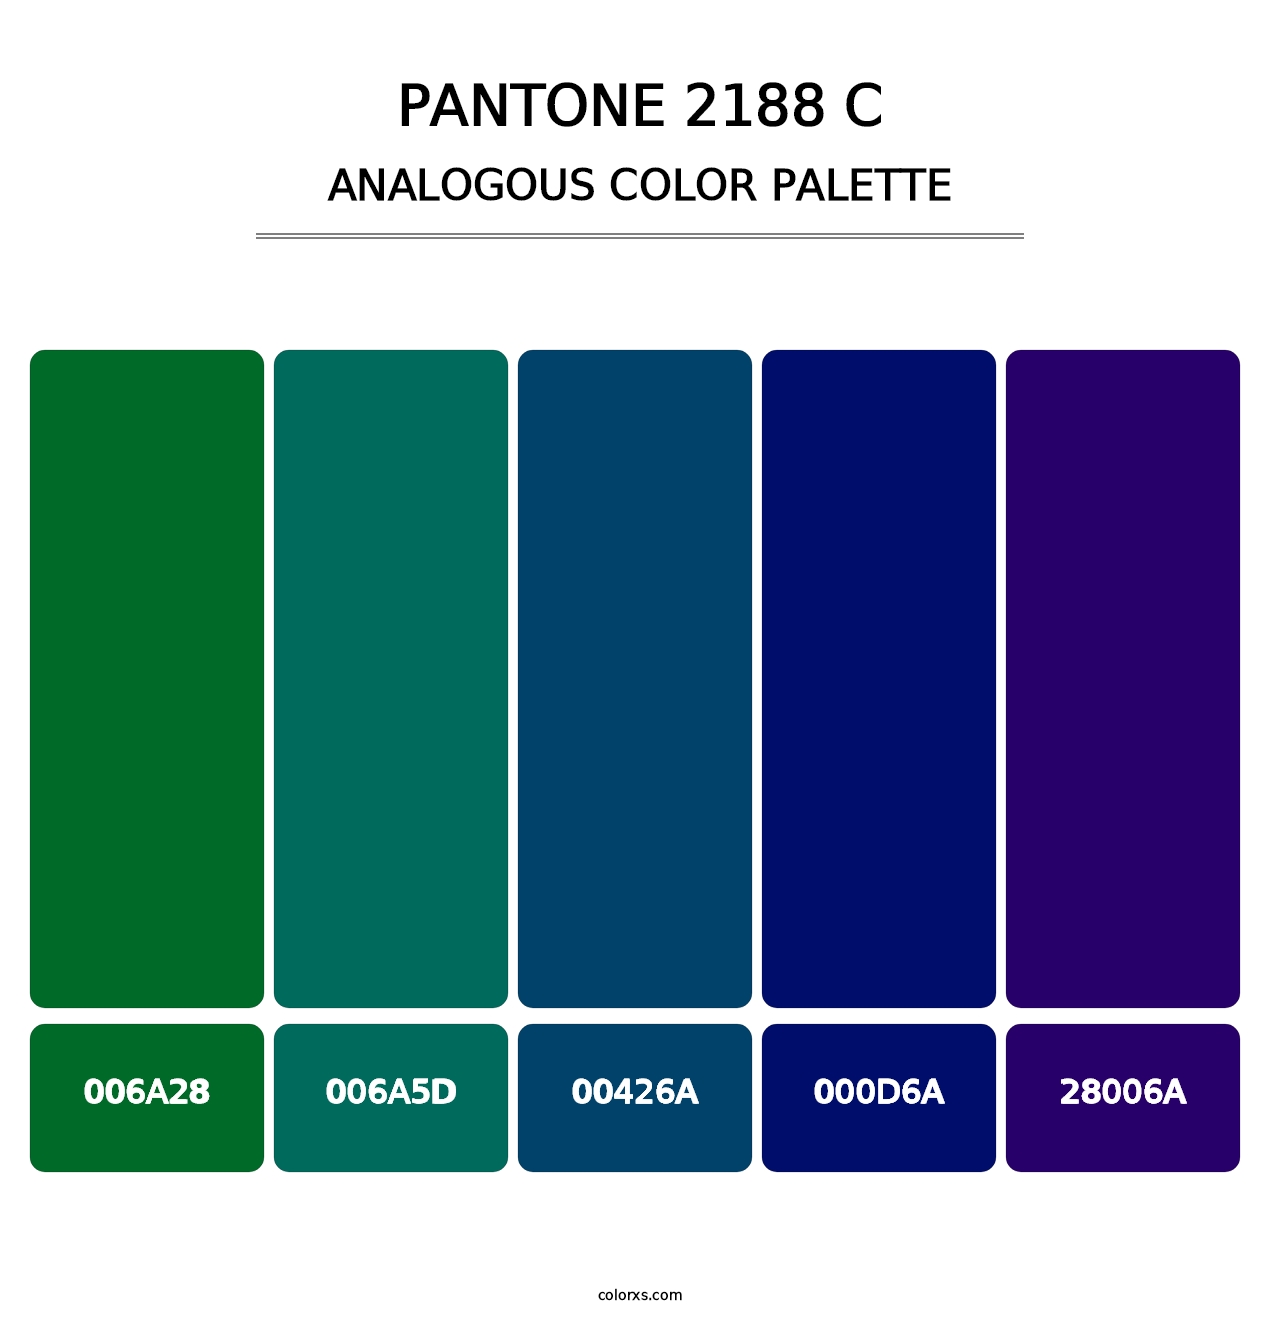 PANTONE 2188 C - Analogous Color Palette